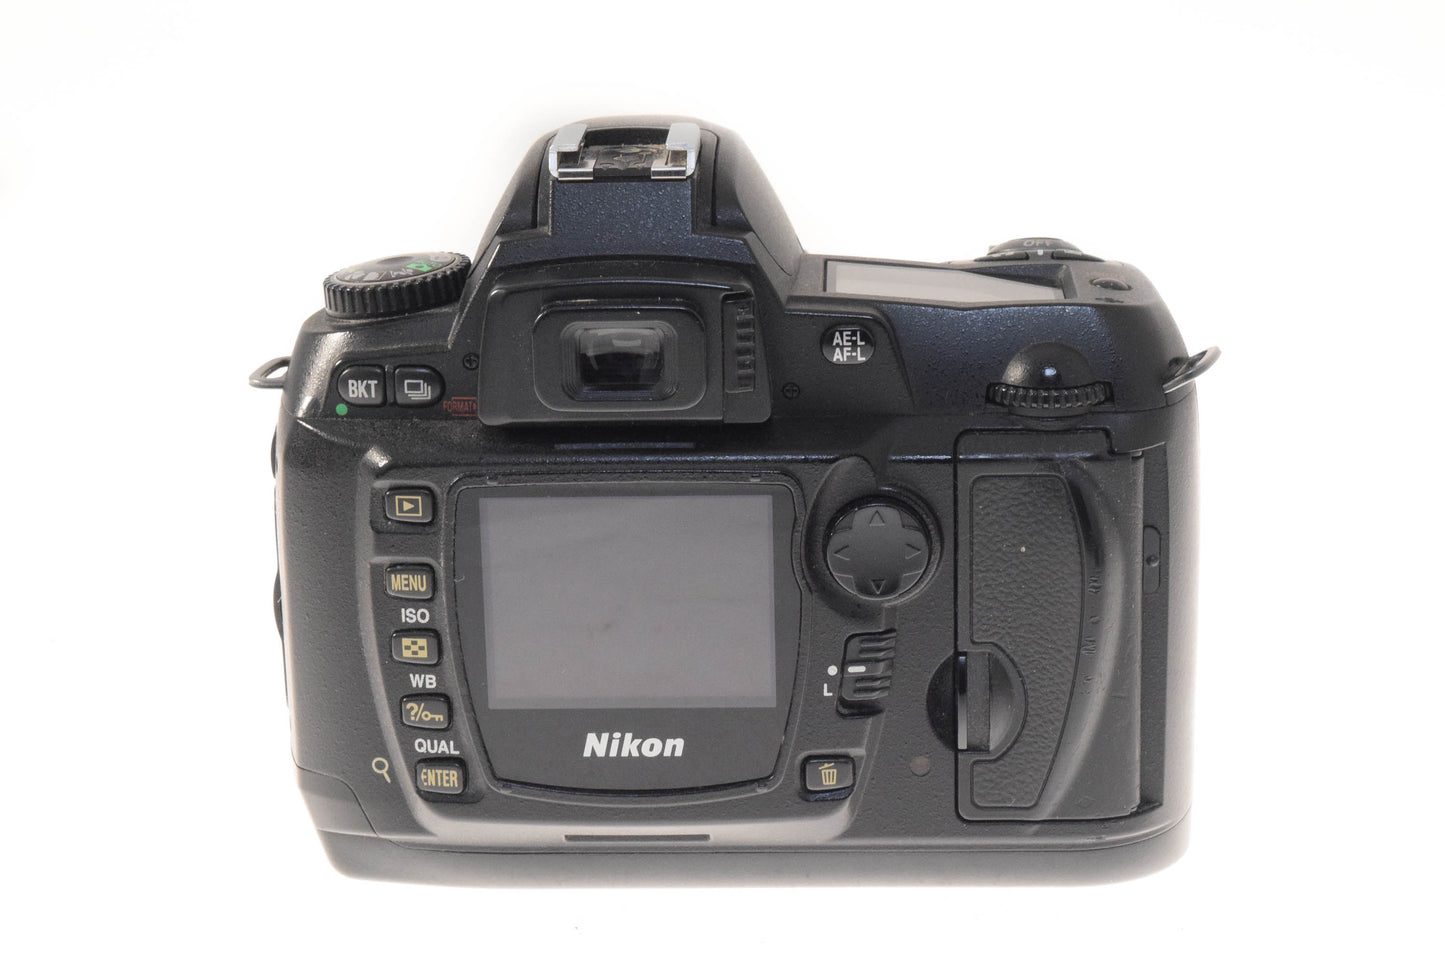 Nikon D70s + 18-55mm f3.5-5.6 AF-S Nikkor G ED II